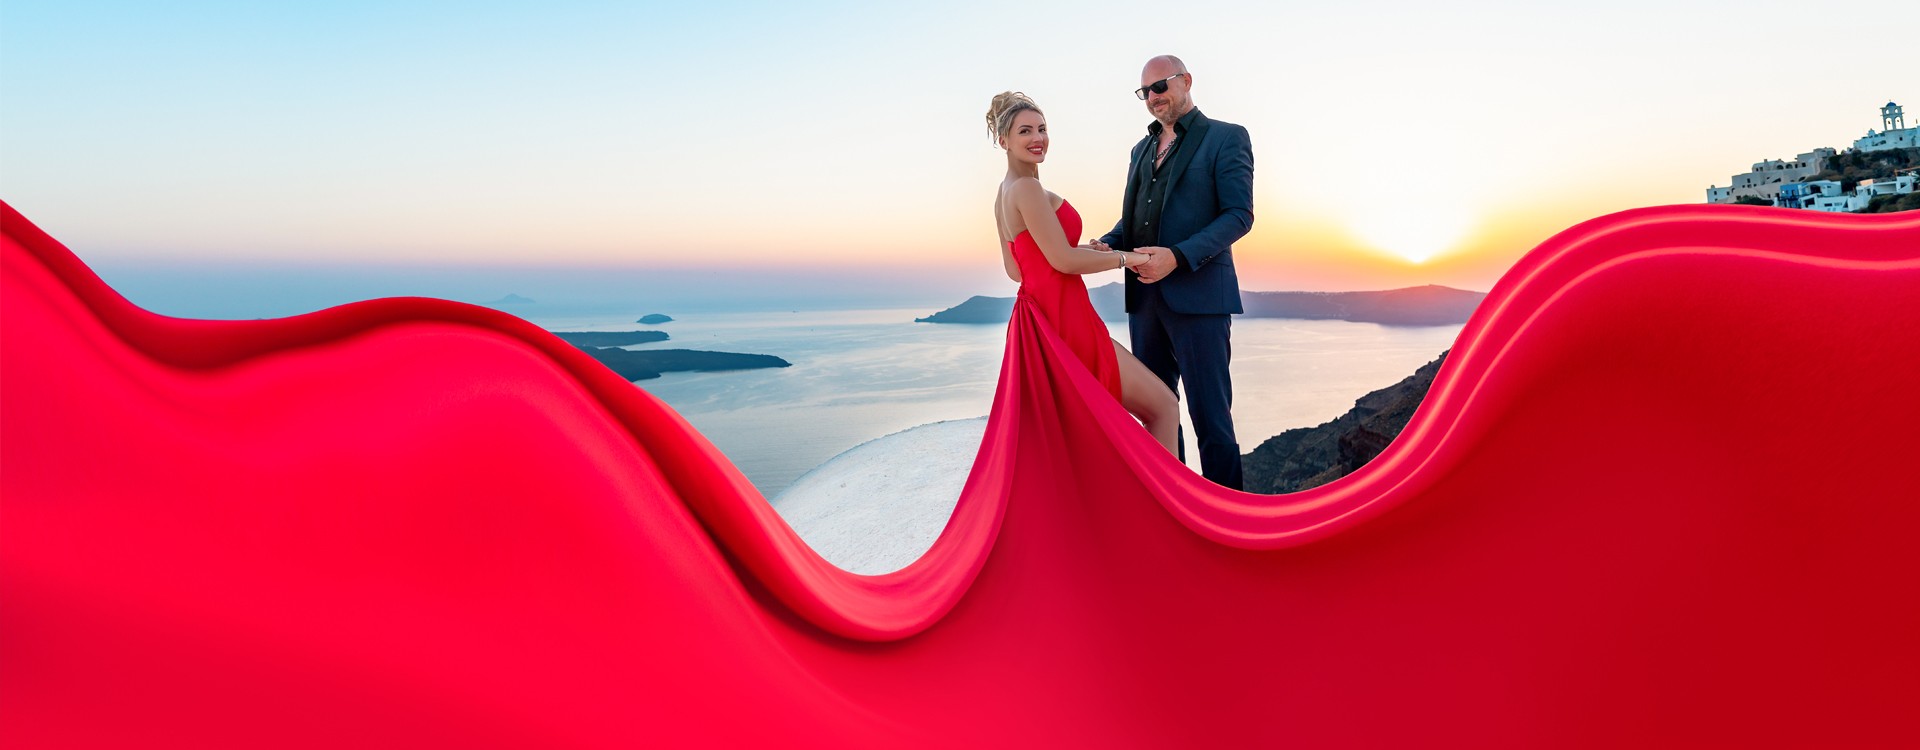 Flying Dress - Eksklusiv oplevelse med unikt photoshoot